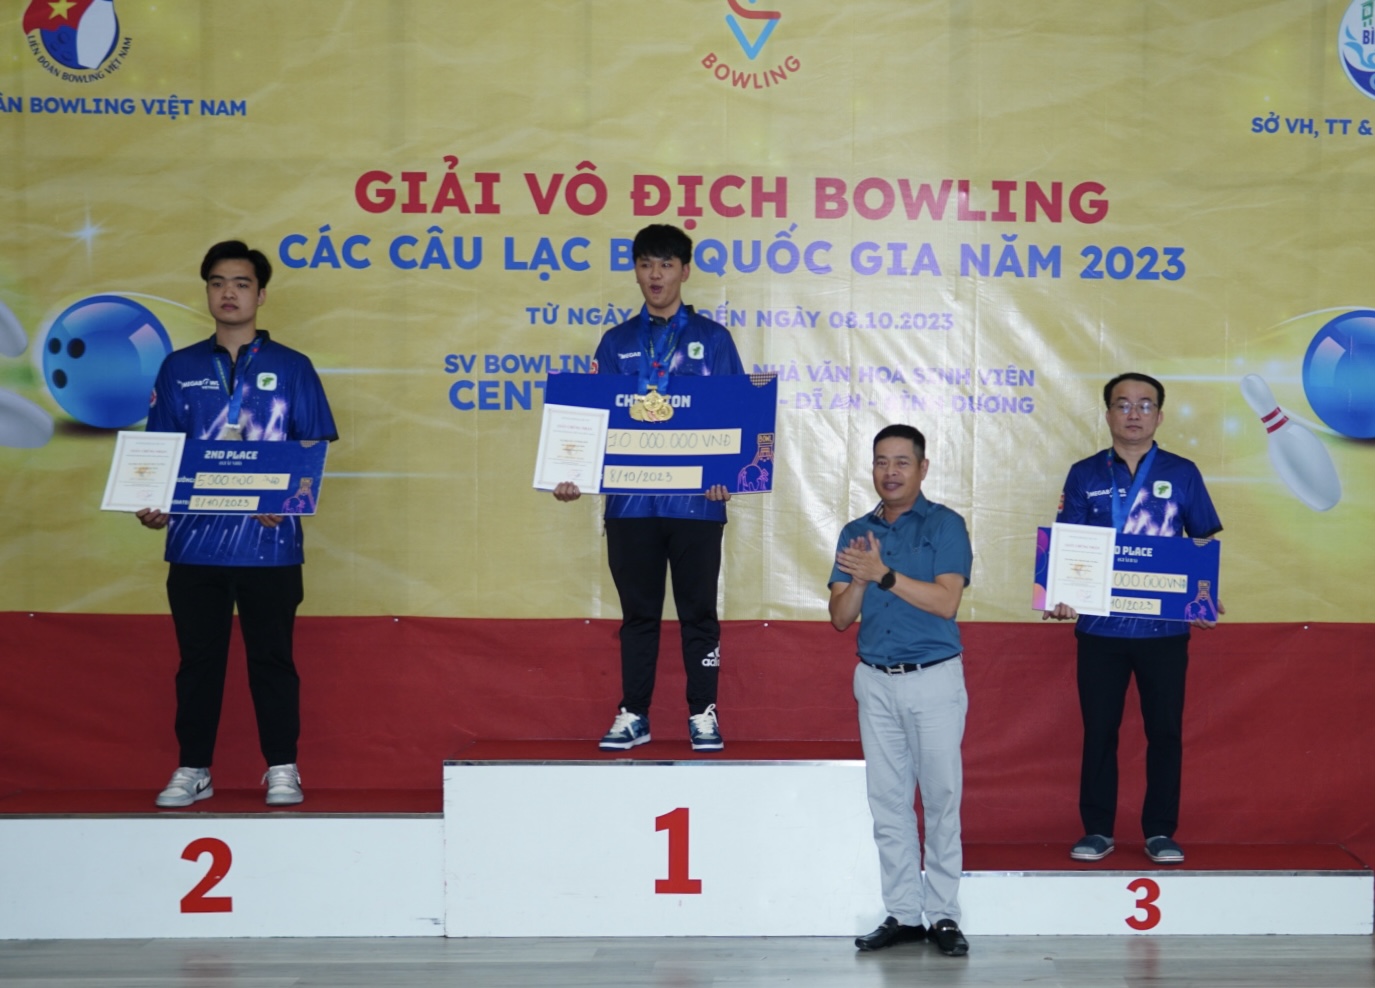 Quảng Nam bất ngờ vượt qua TP.HCM dẫn đầu giải vô địch bowling các CLB quốc gia - Ảnh 3.